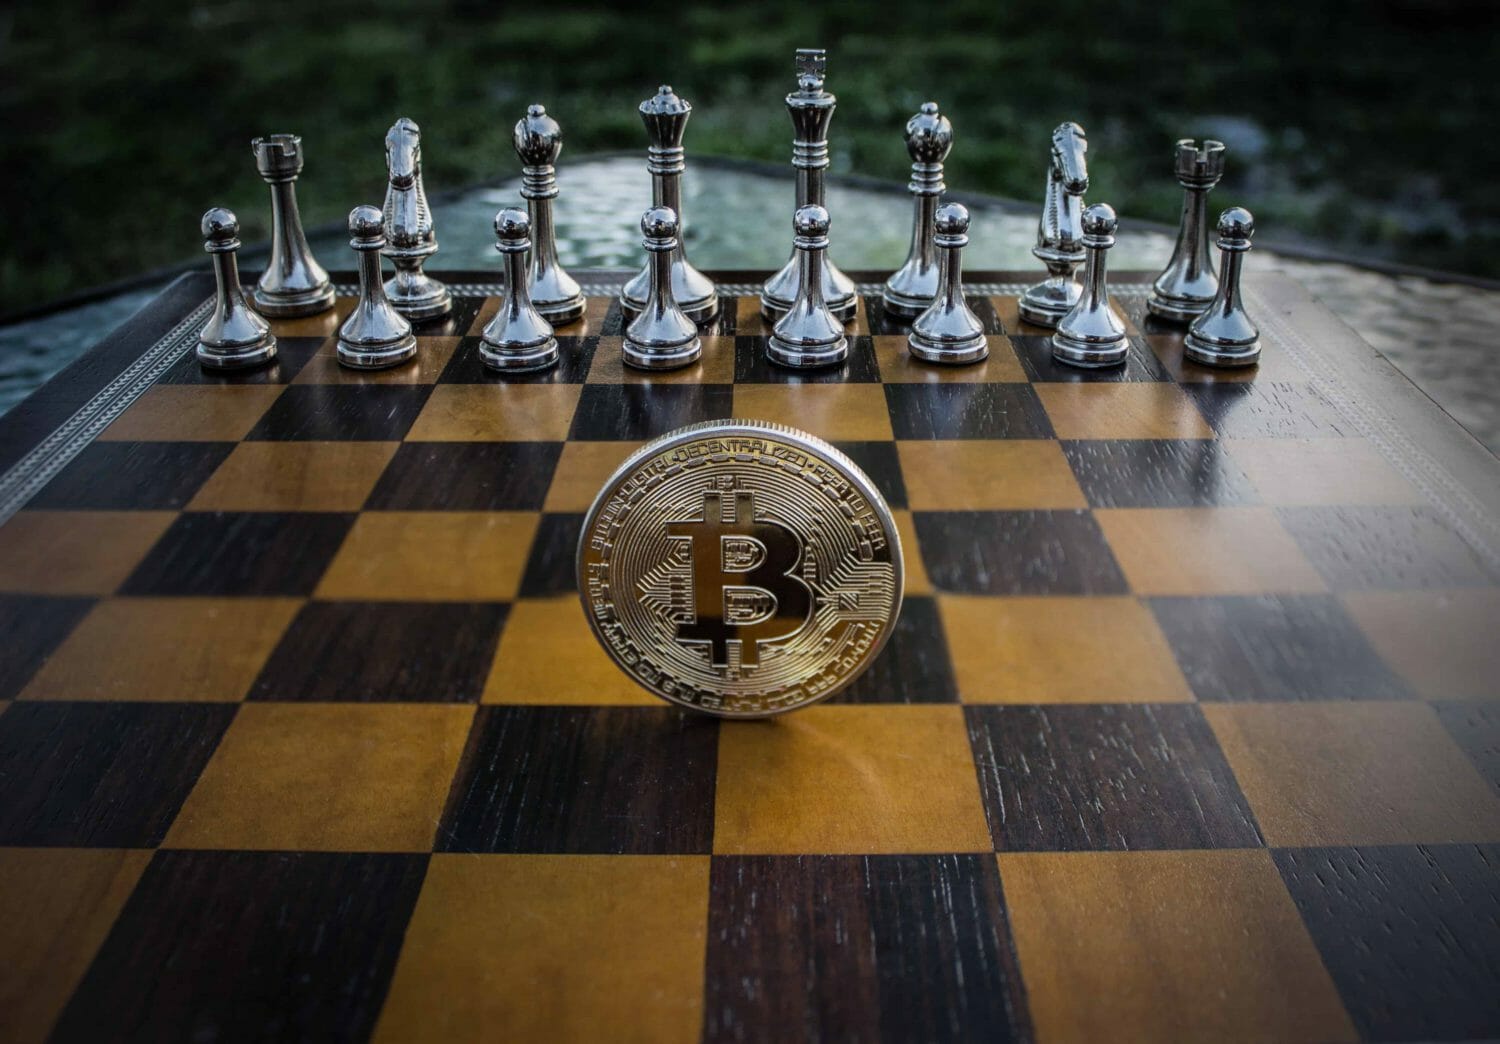 Do you like Bitcoin and chess?